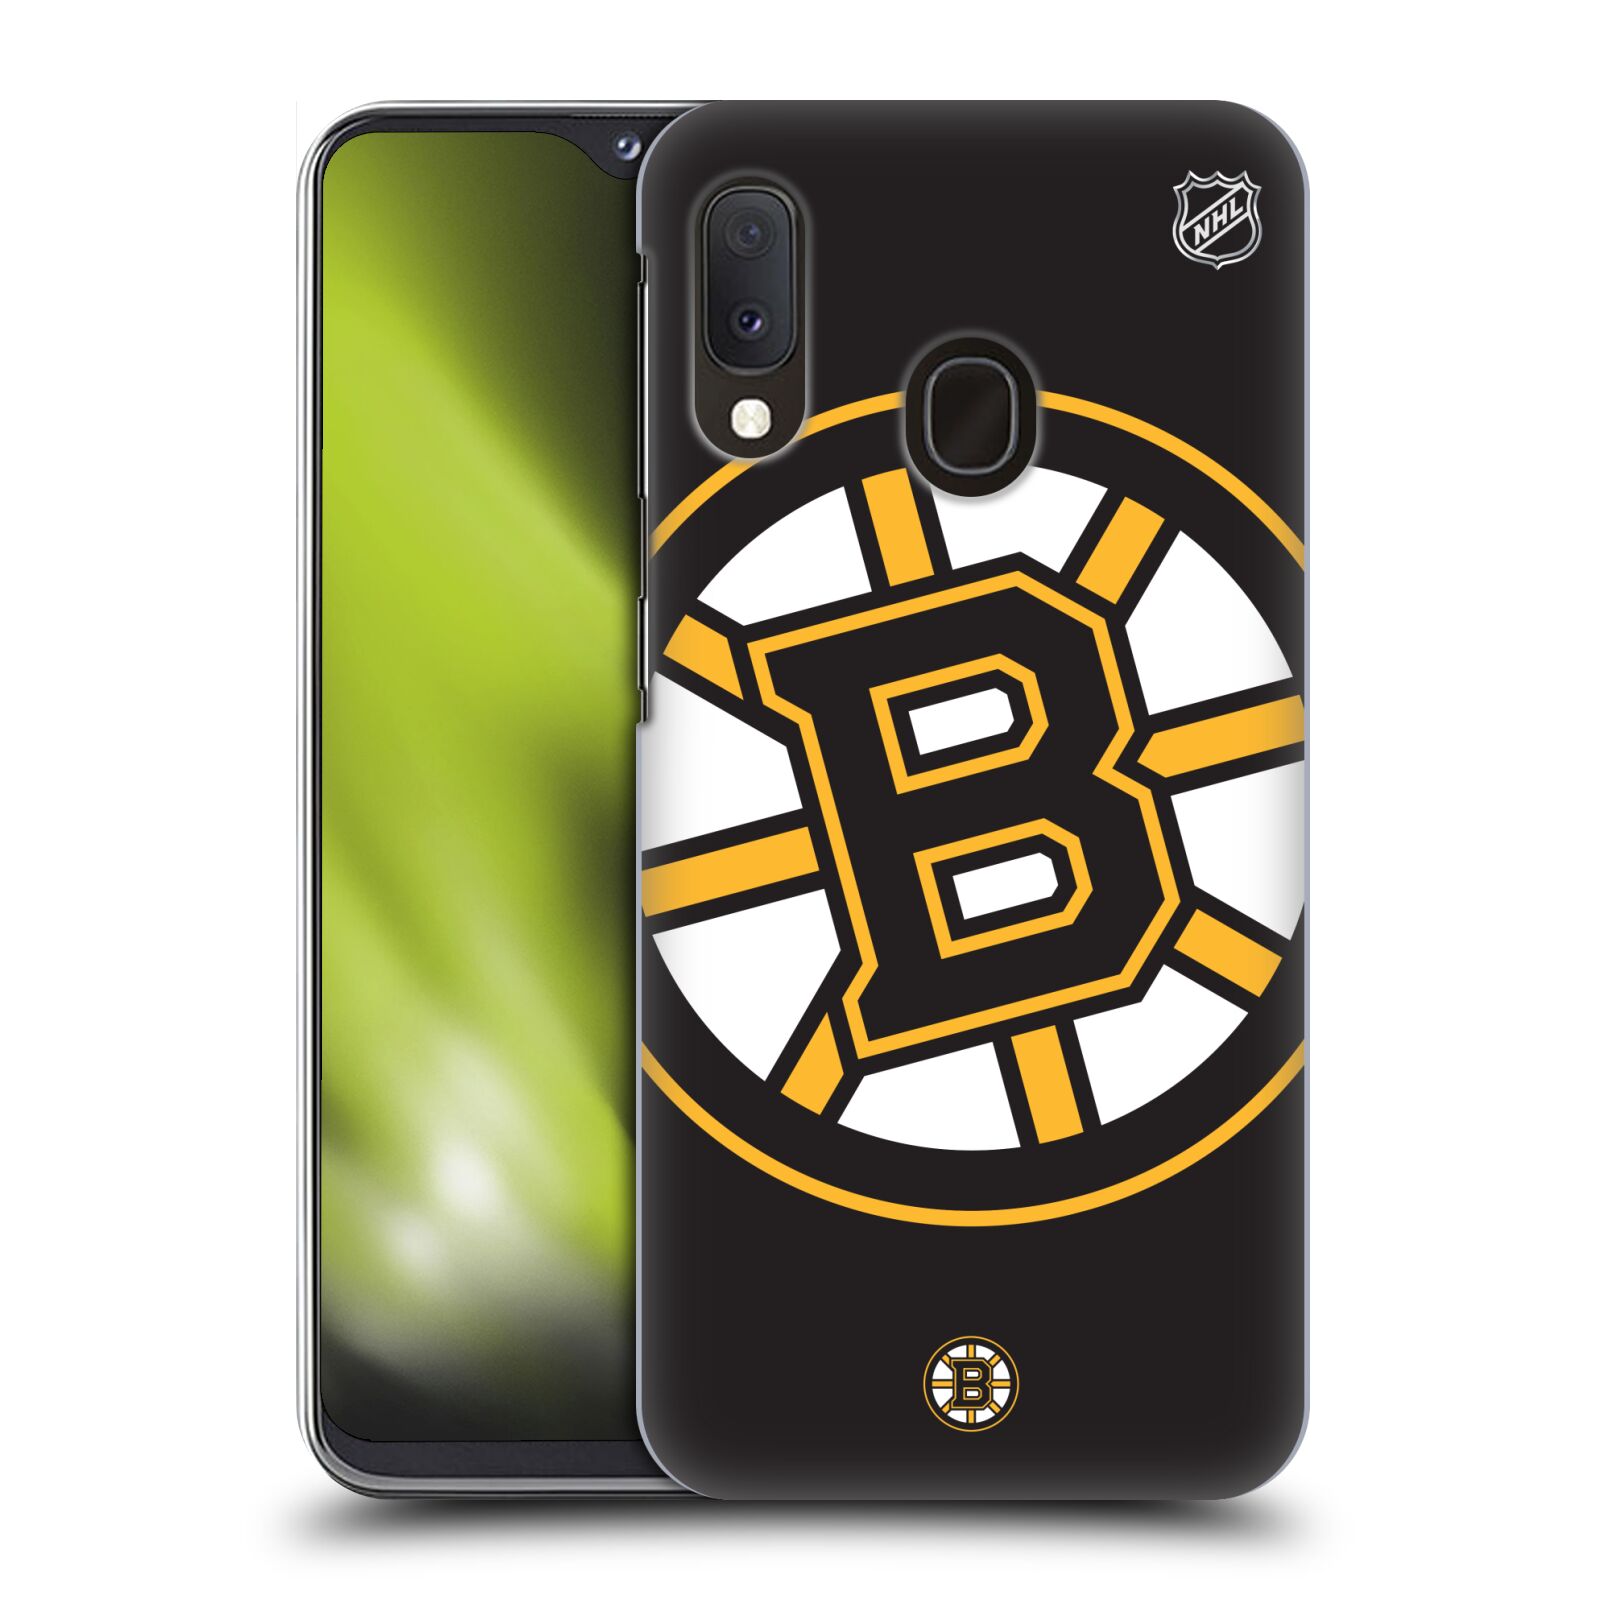 Pouzdro na mobil Samsung Galaxy A20e - HEAD CASE - Hokej NHL - Boston Bruins - velký znak